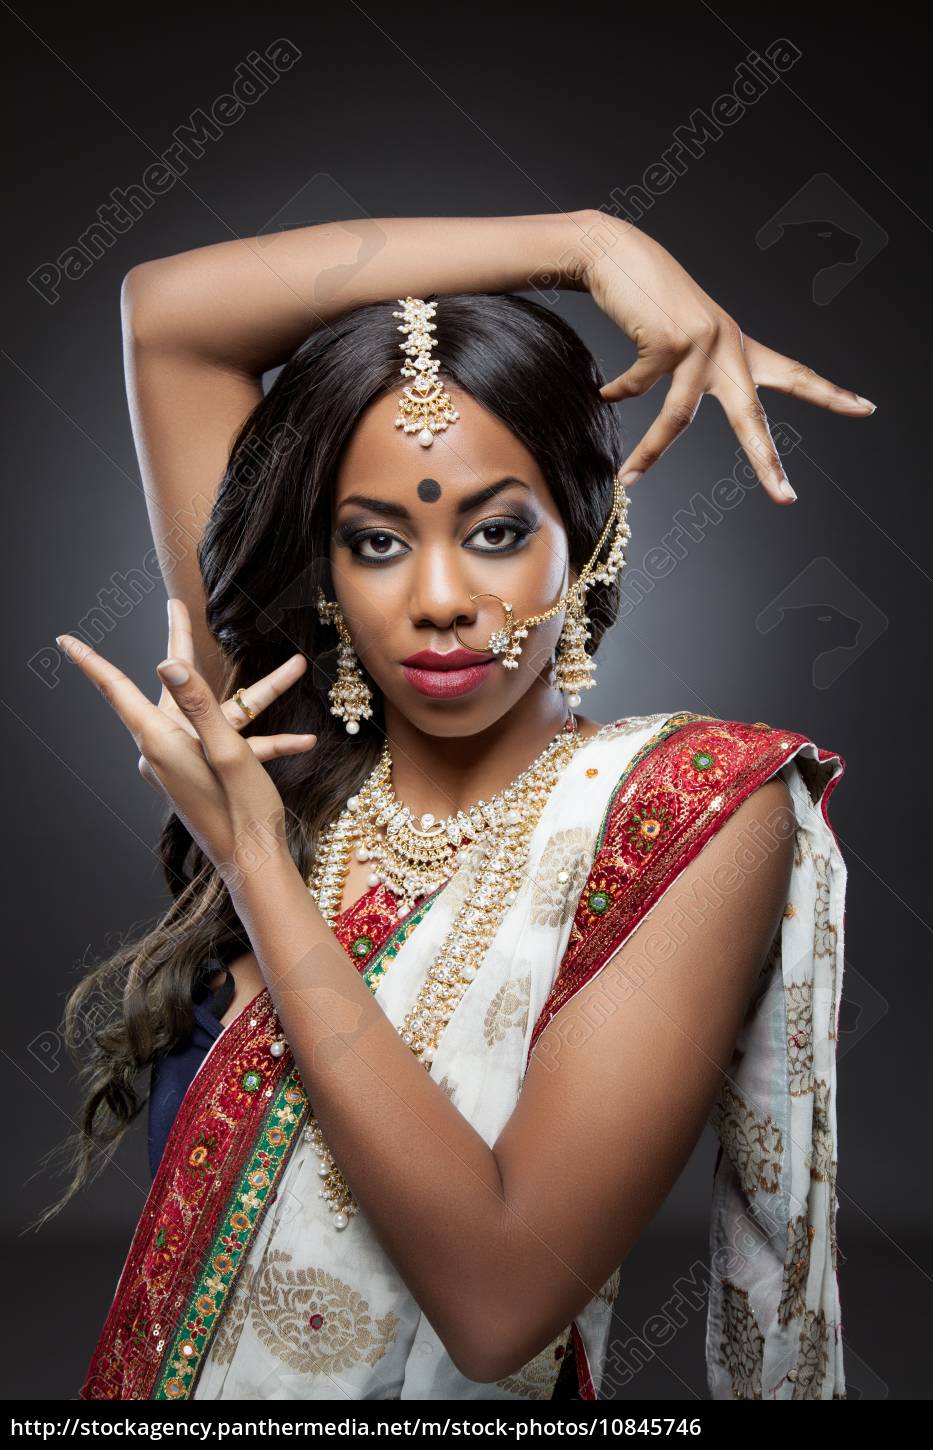 Mujer India Joven Hermosa En Ropa Tradicional Con Nupcial Foto de archivo -  Imagen de hembra, lujo: 100106674